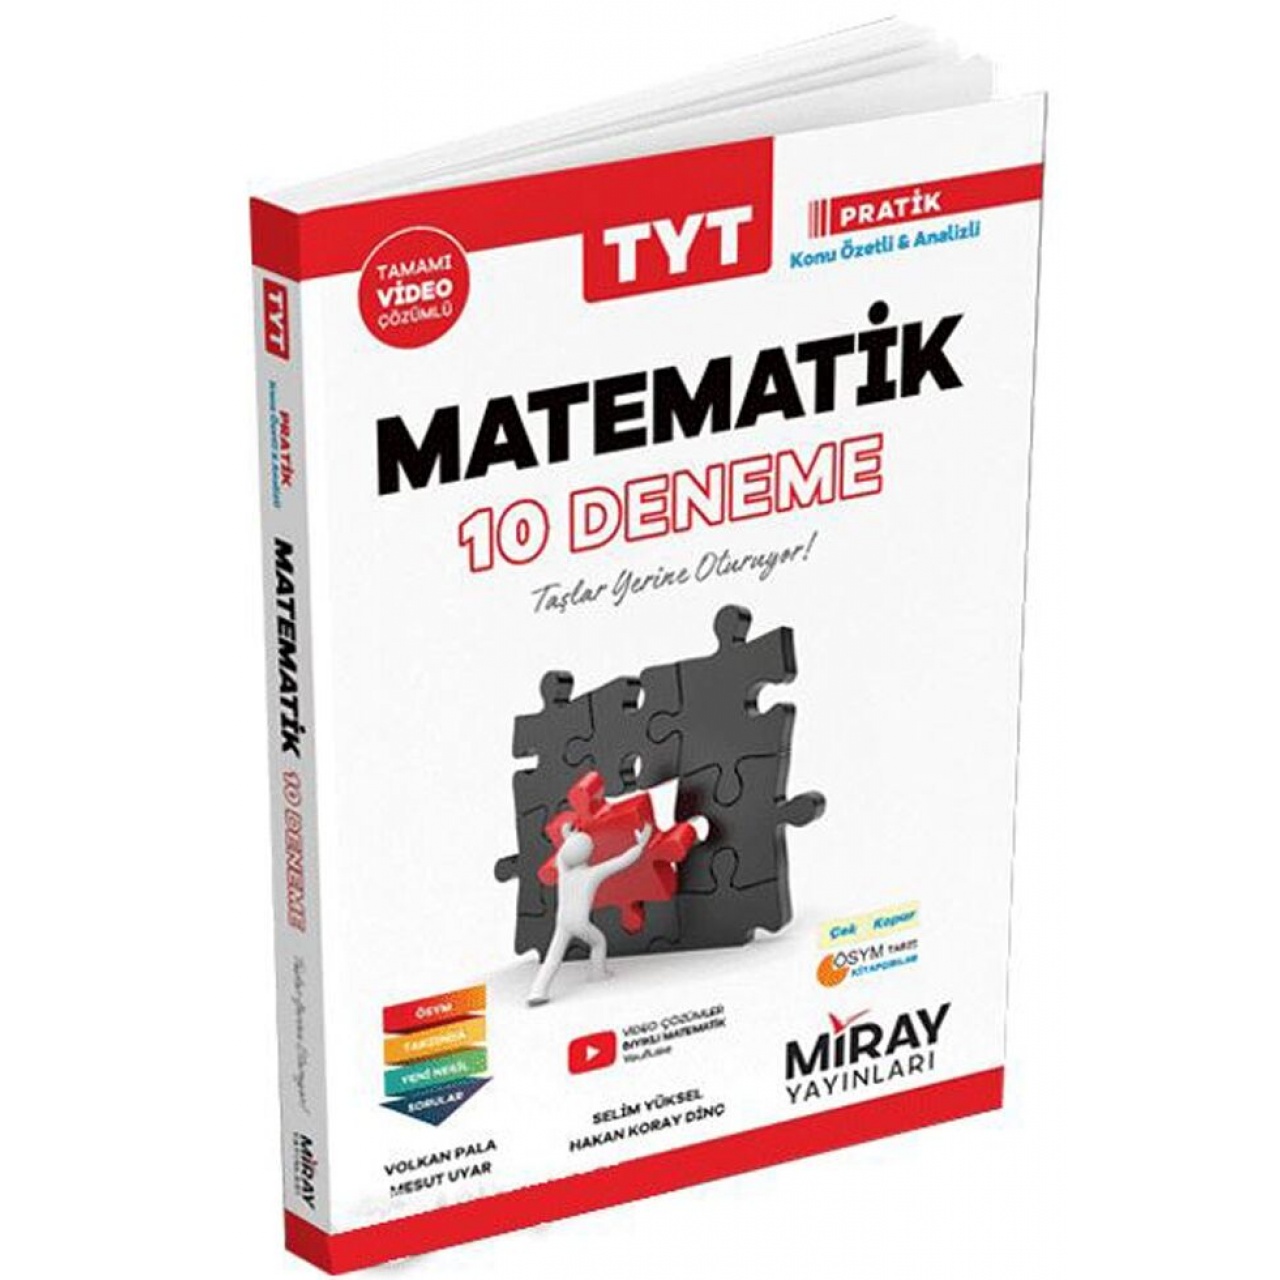 TYT Matematik 10 Deneme Miray Yayınları